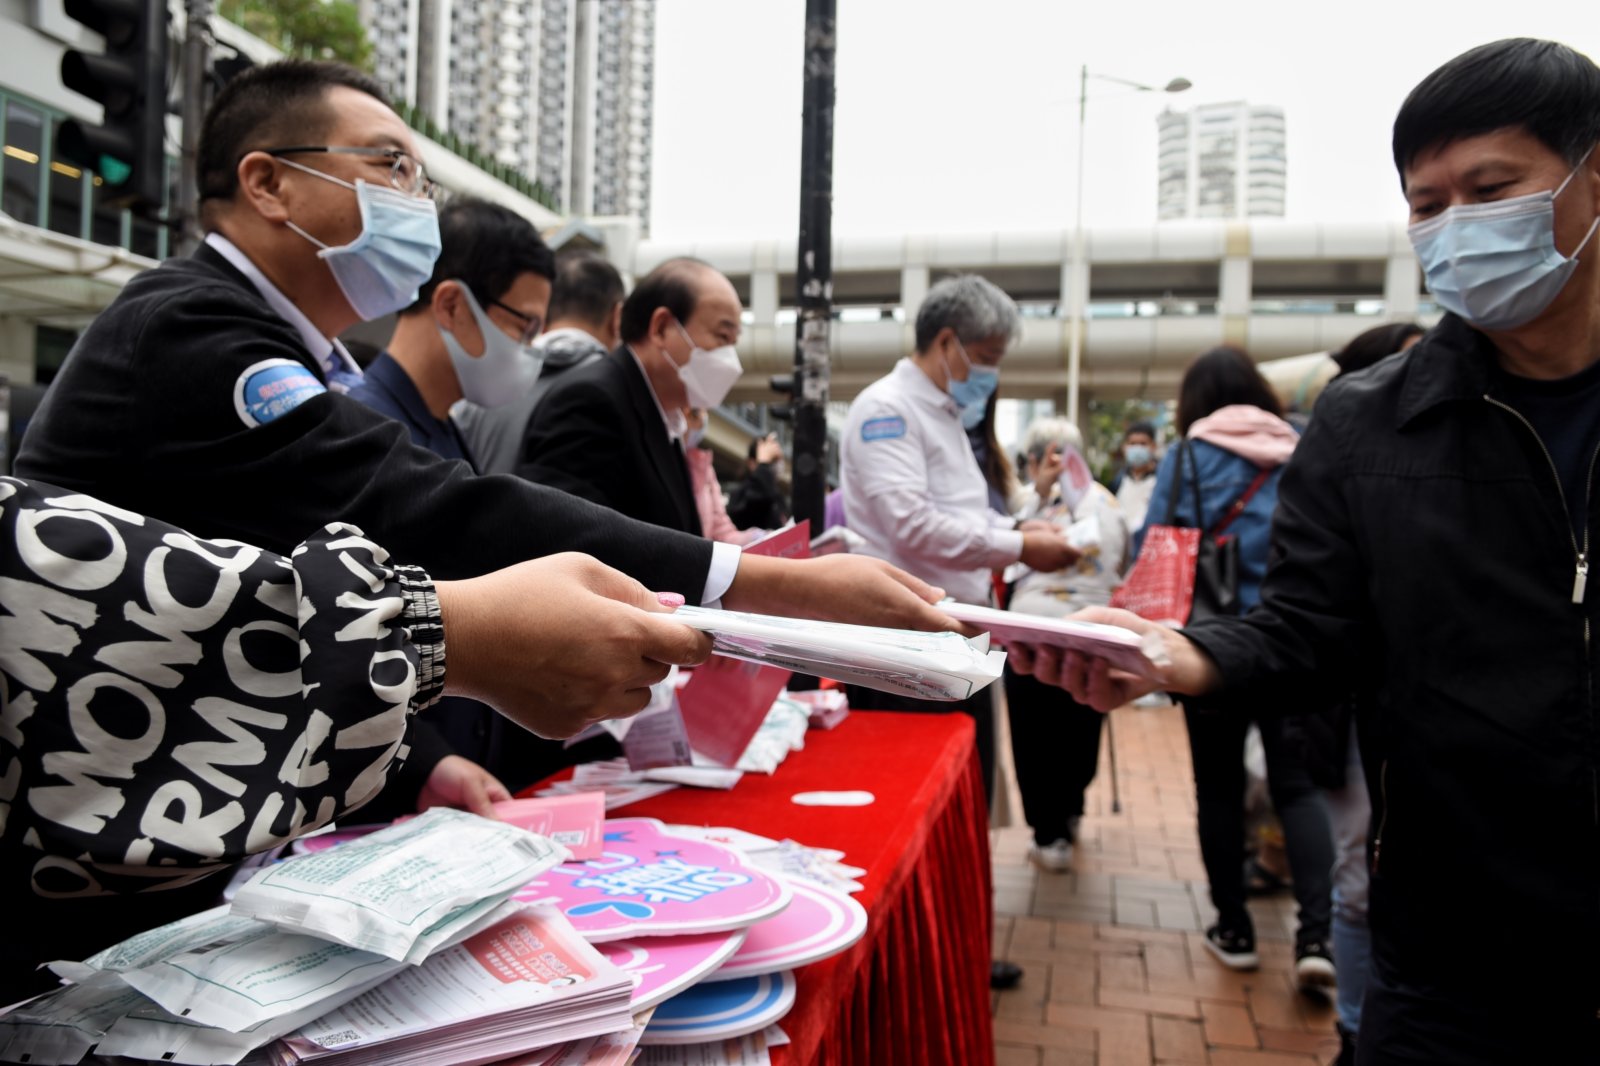 2月27日，香港廣東社團總會舉行「齊打疫苗 護己護人 盡快通關 重振經濟」宣傳活動，呼籲更多市民盡早接種疫苗，並為市民派發防疫物資。香港中通社圖片